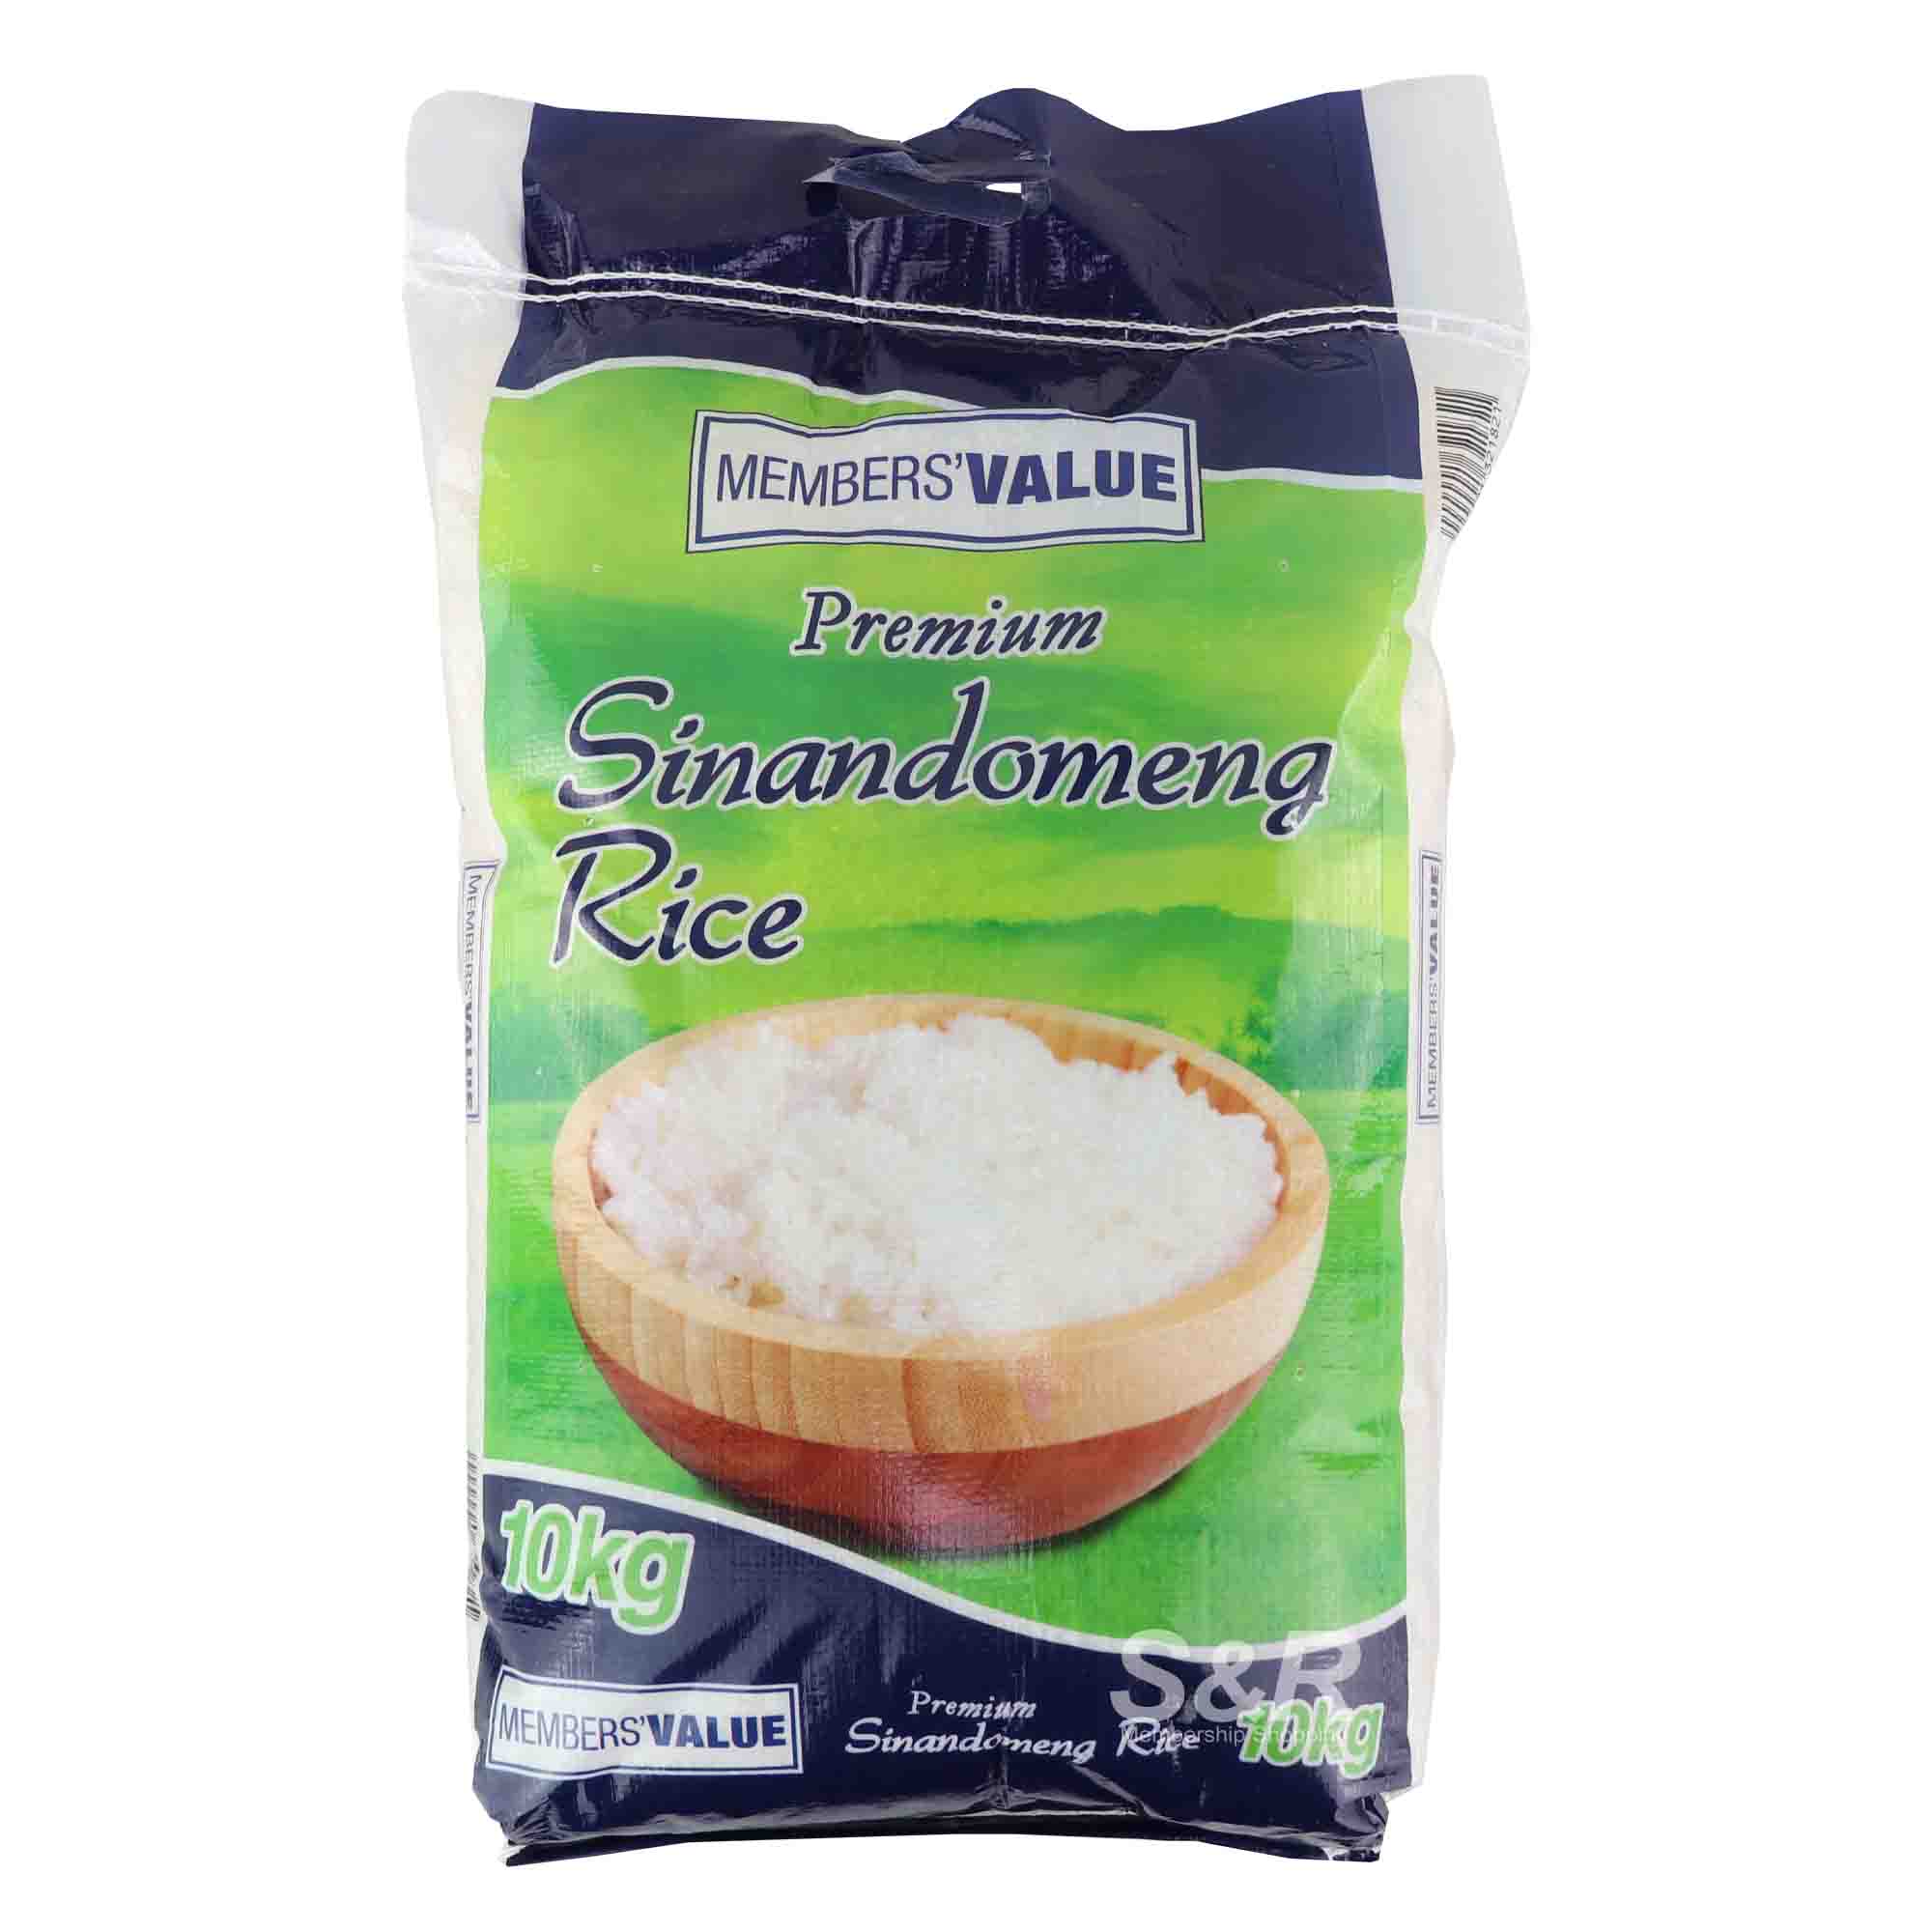 Members' Value Sinandomeng Premium Rice 10kg